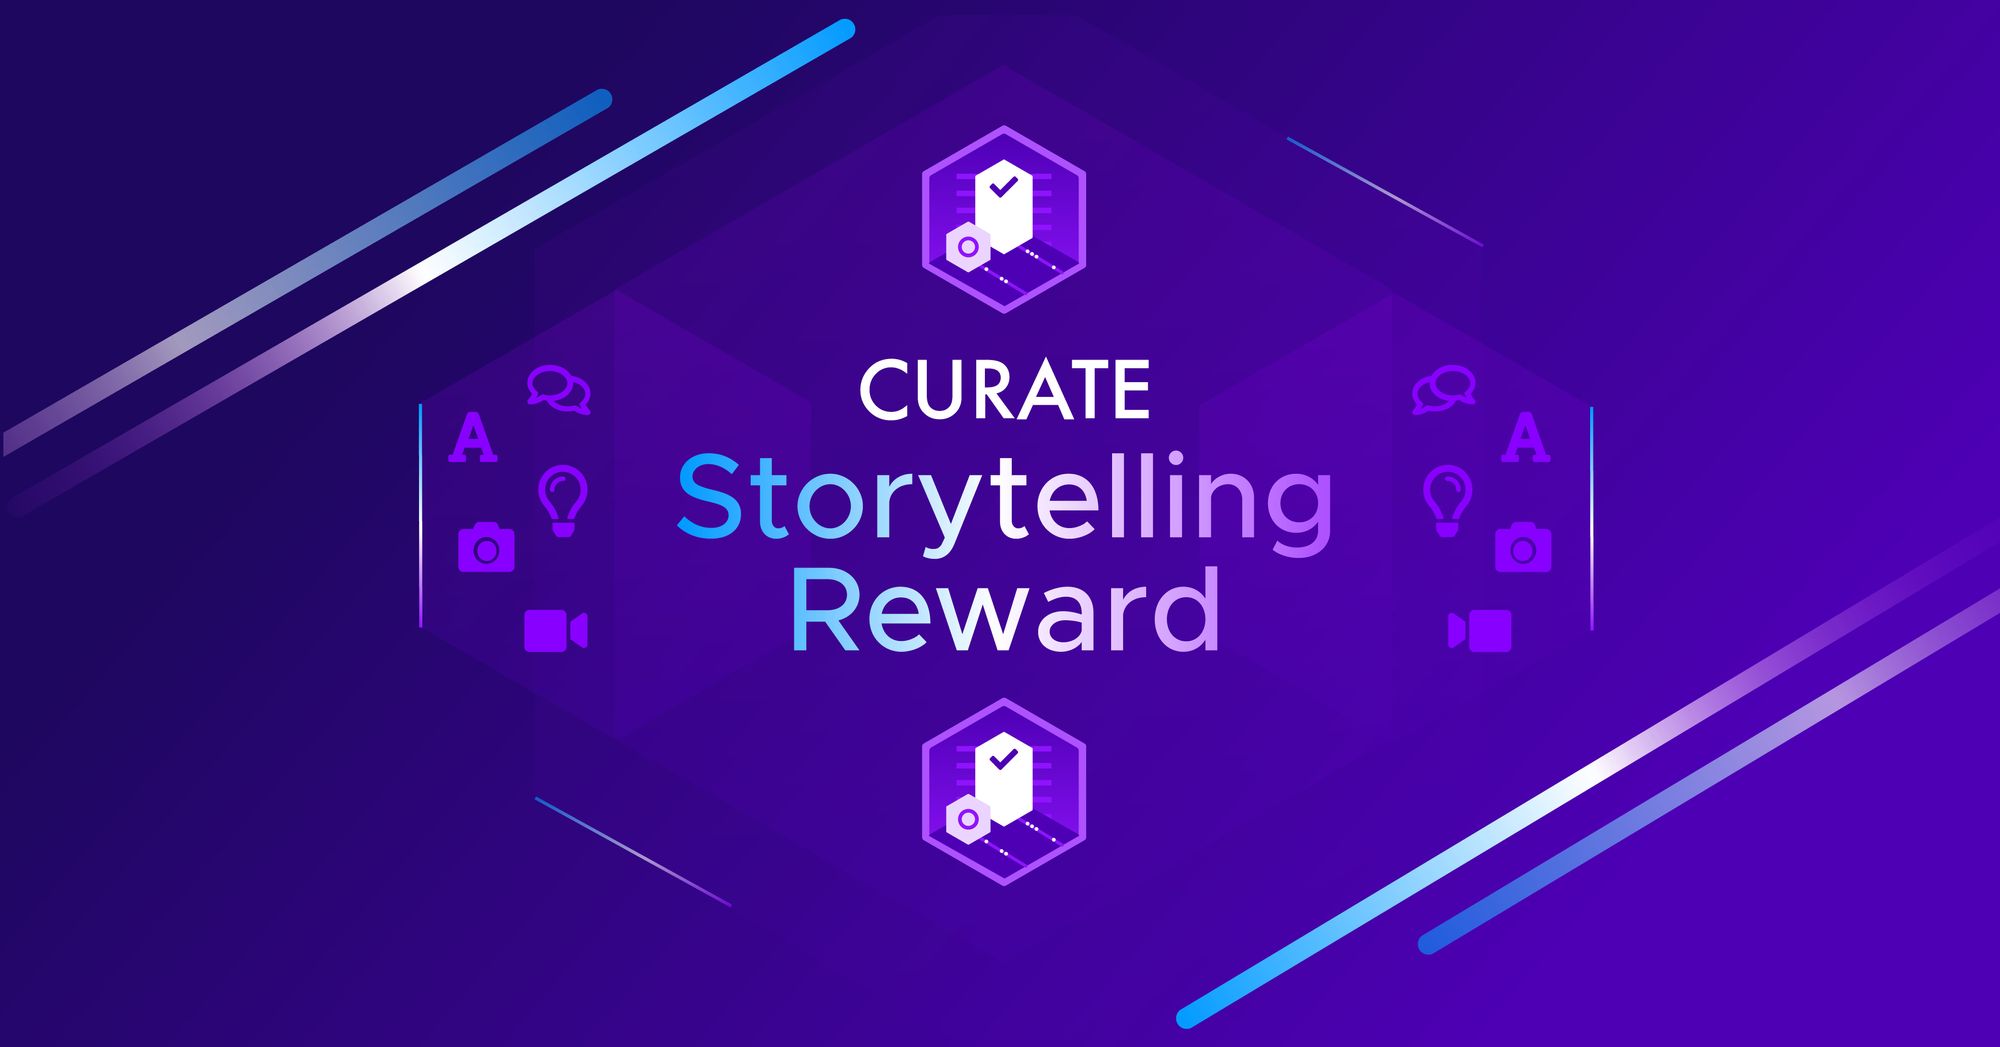 Kleros Curate Storytelling Reward Program Begins